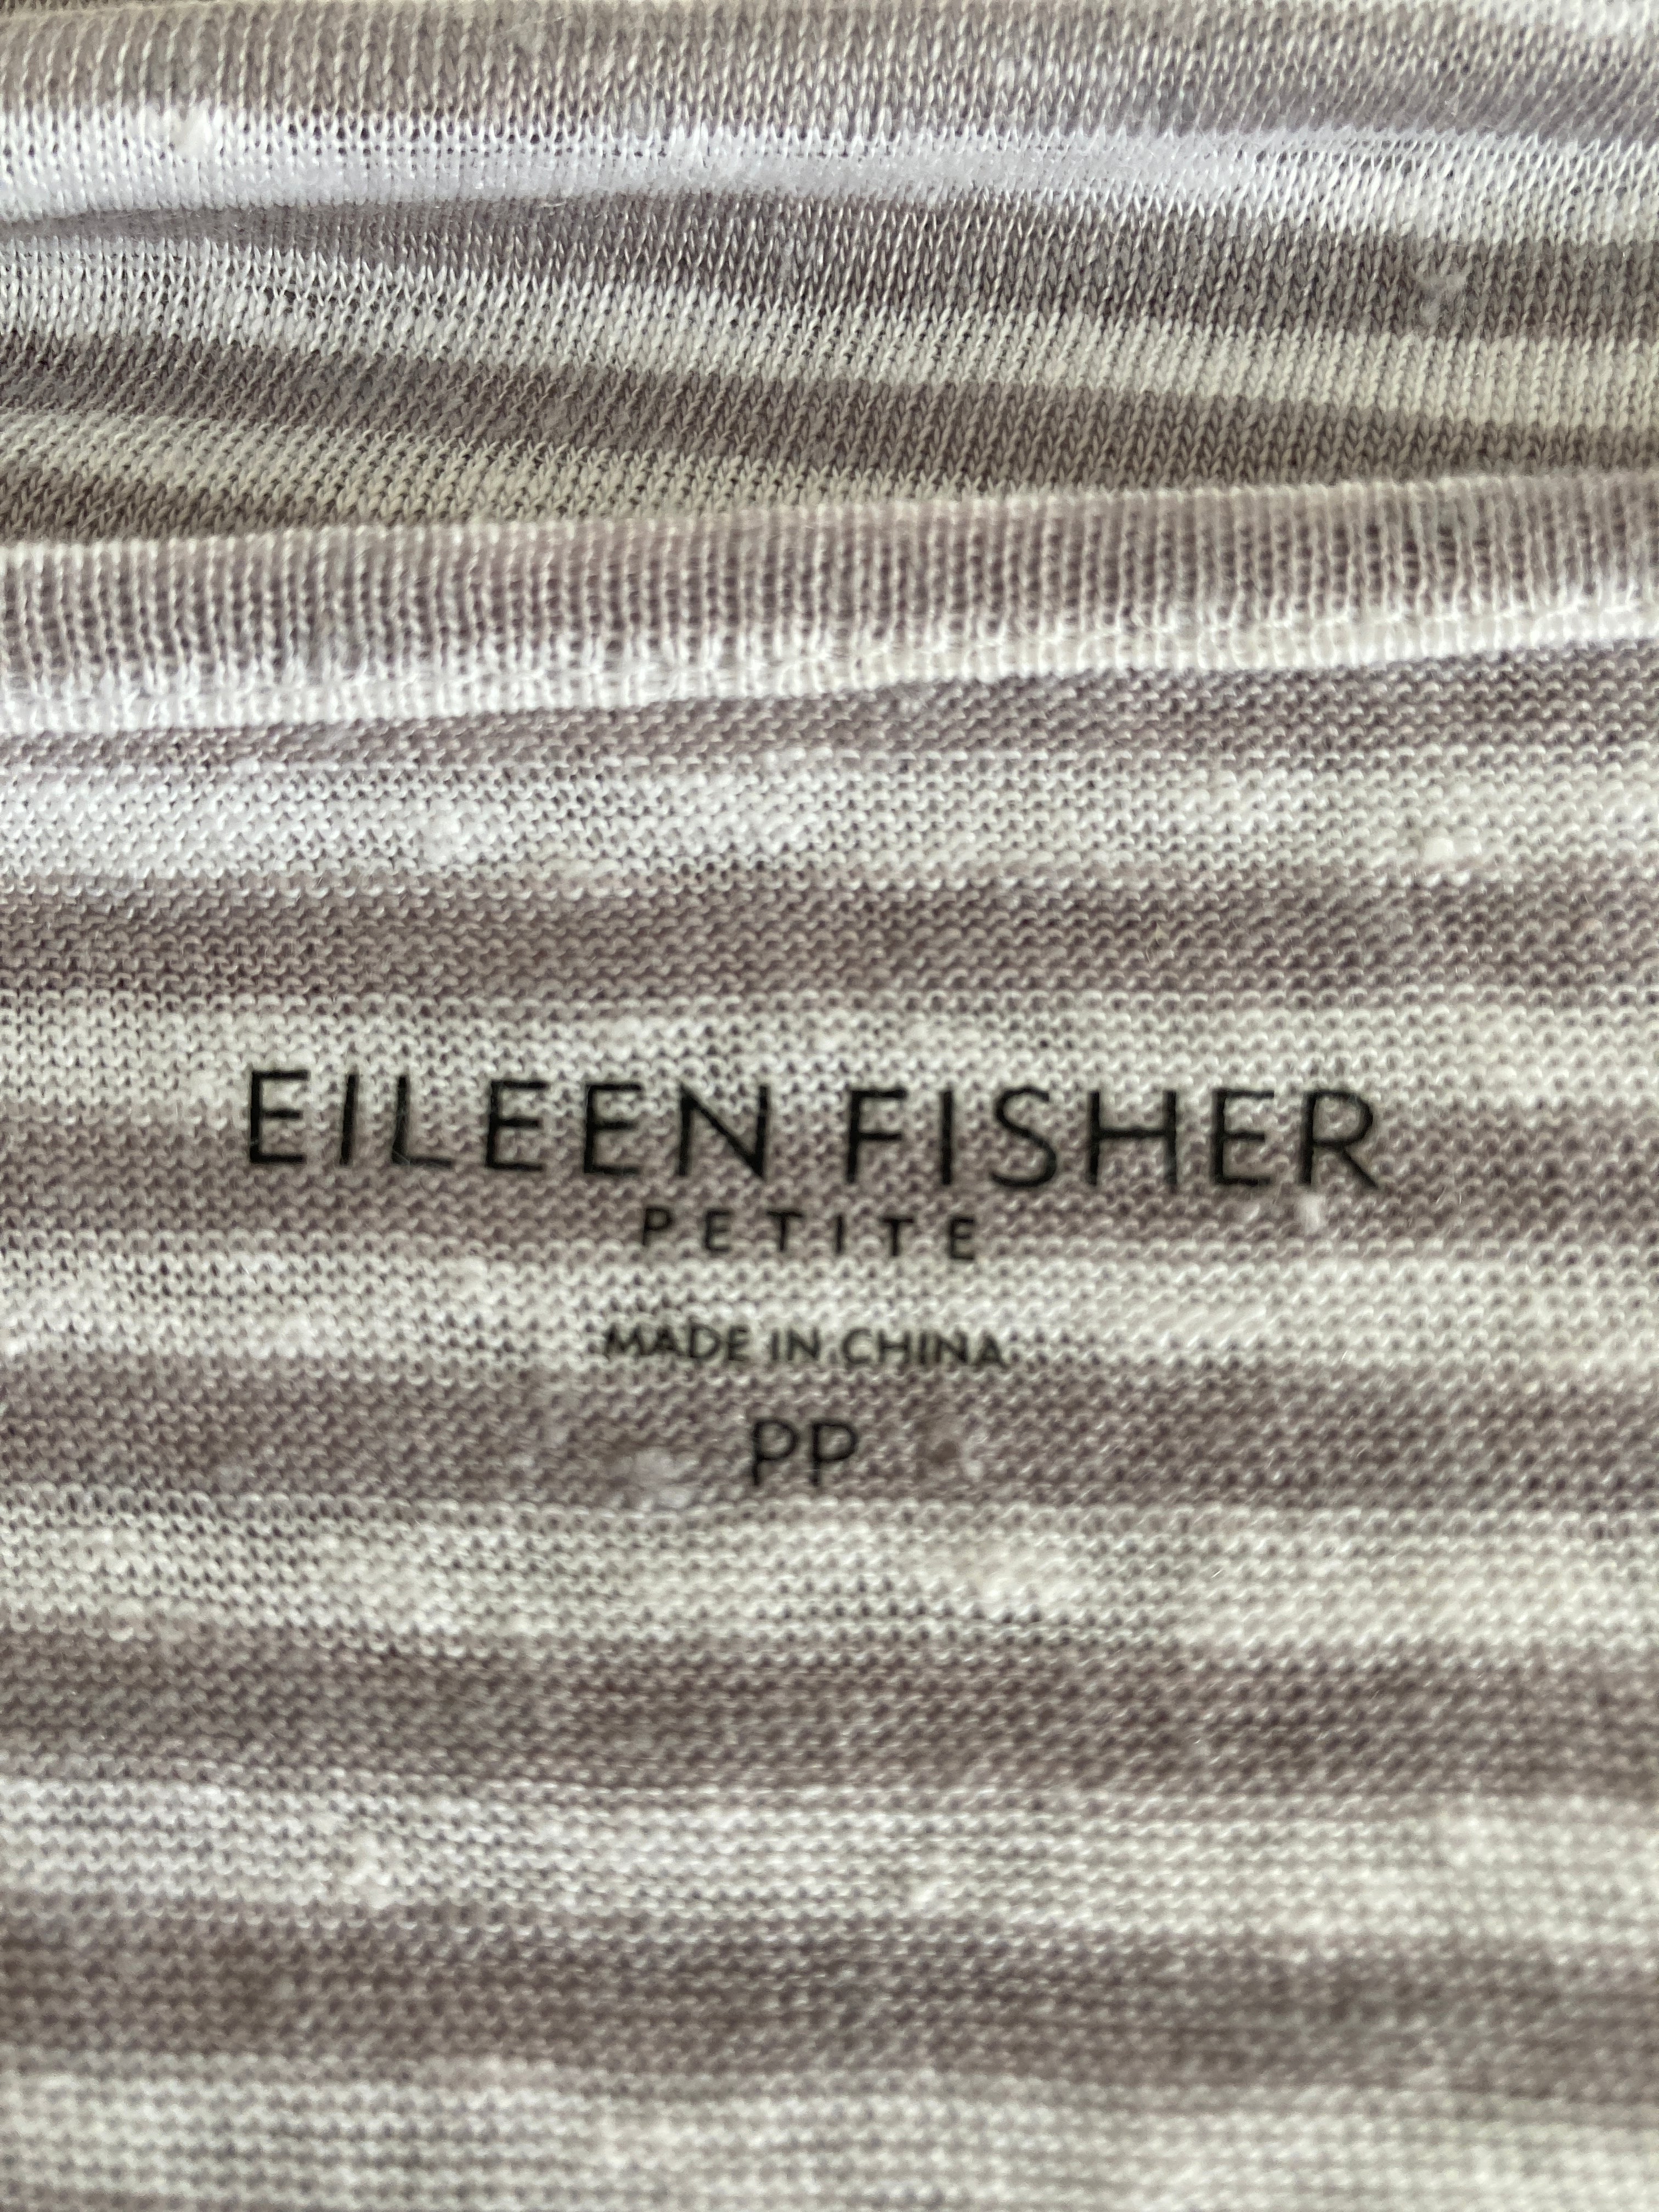 Eileen Fisher Top, P